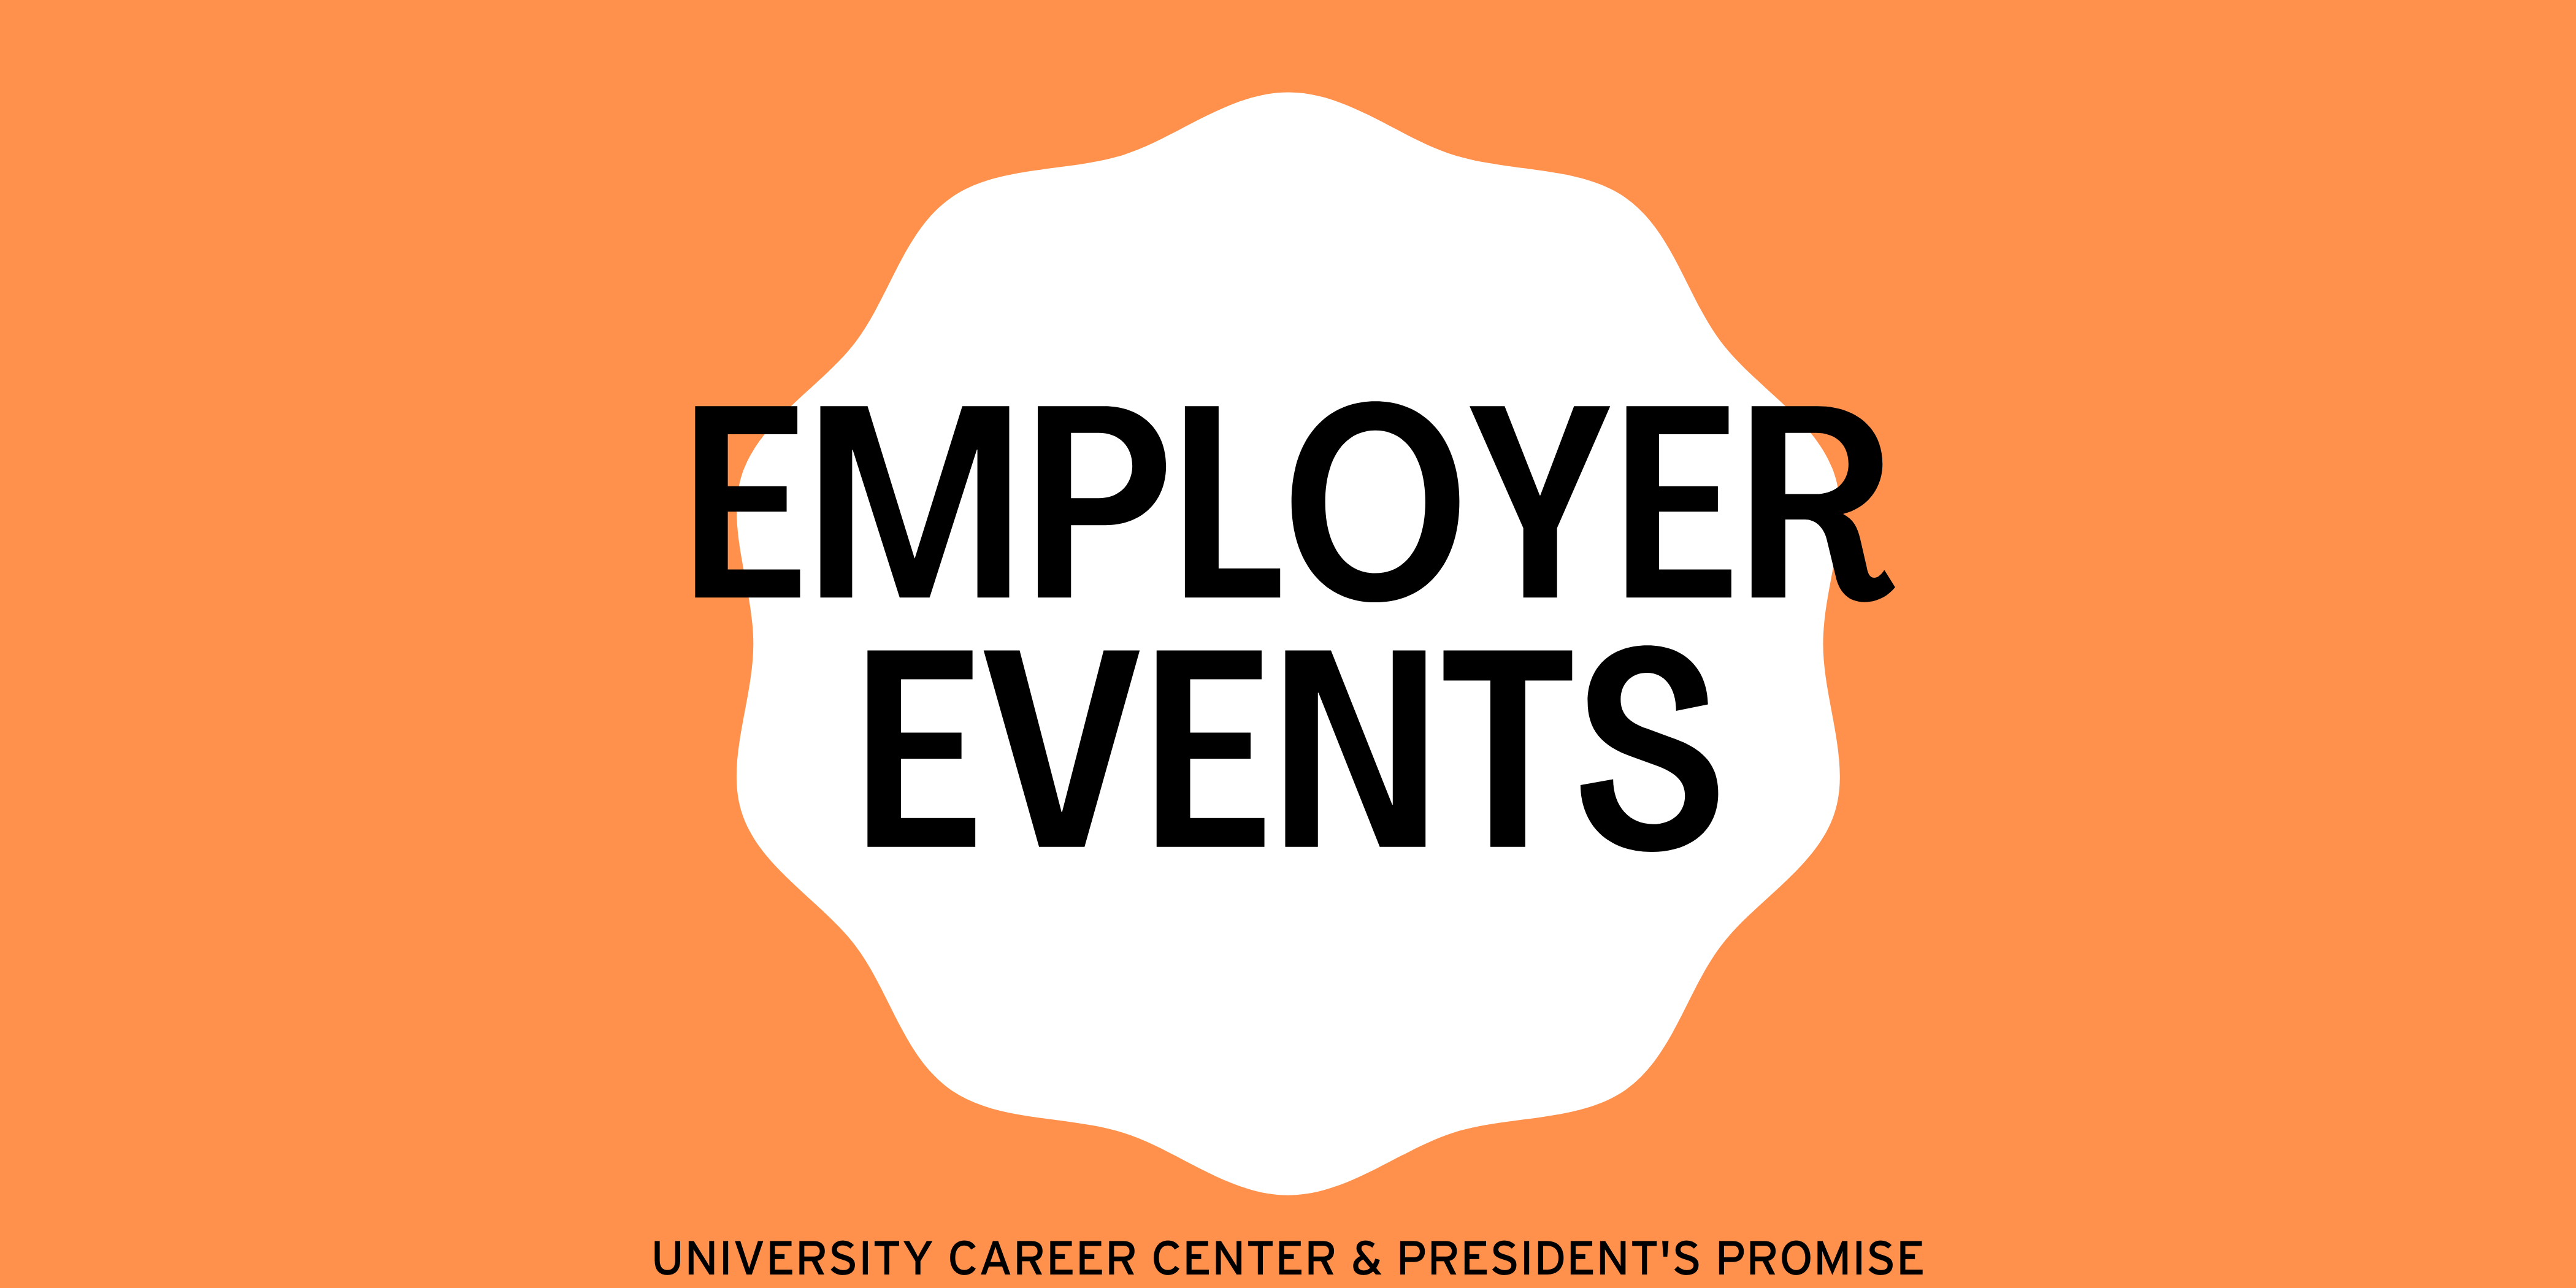 Thumbnail: Employer Events